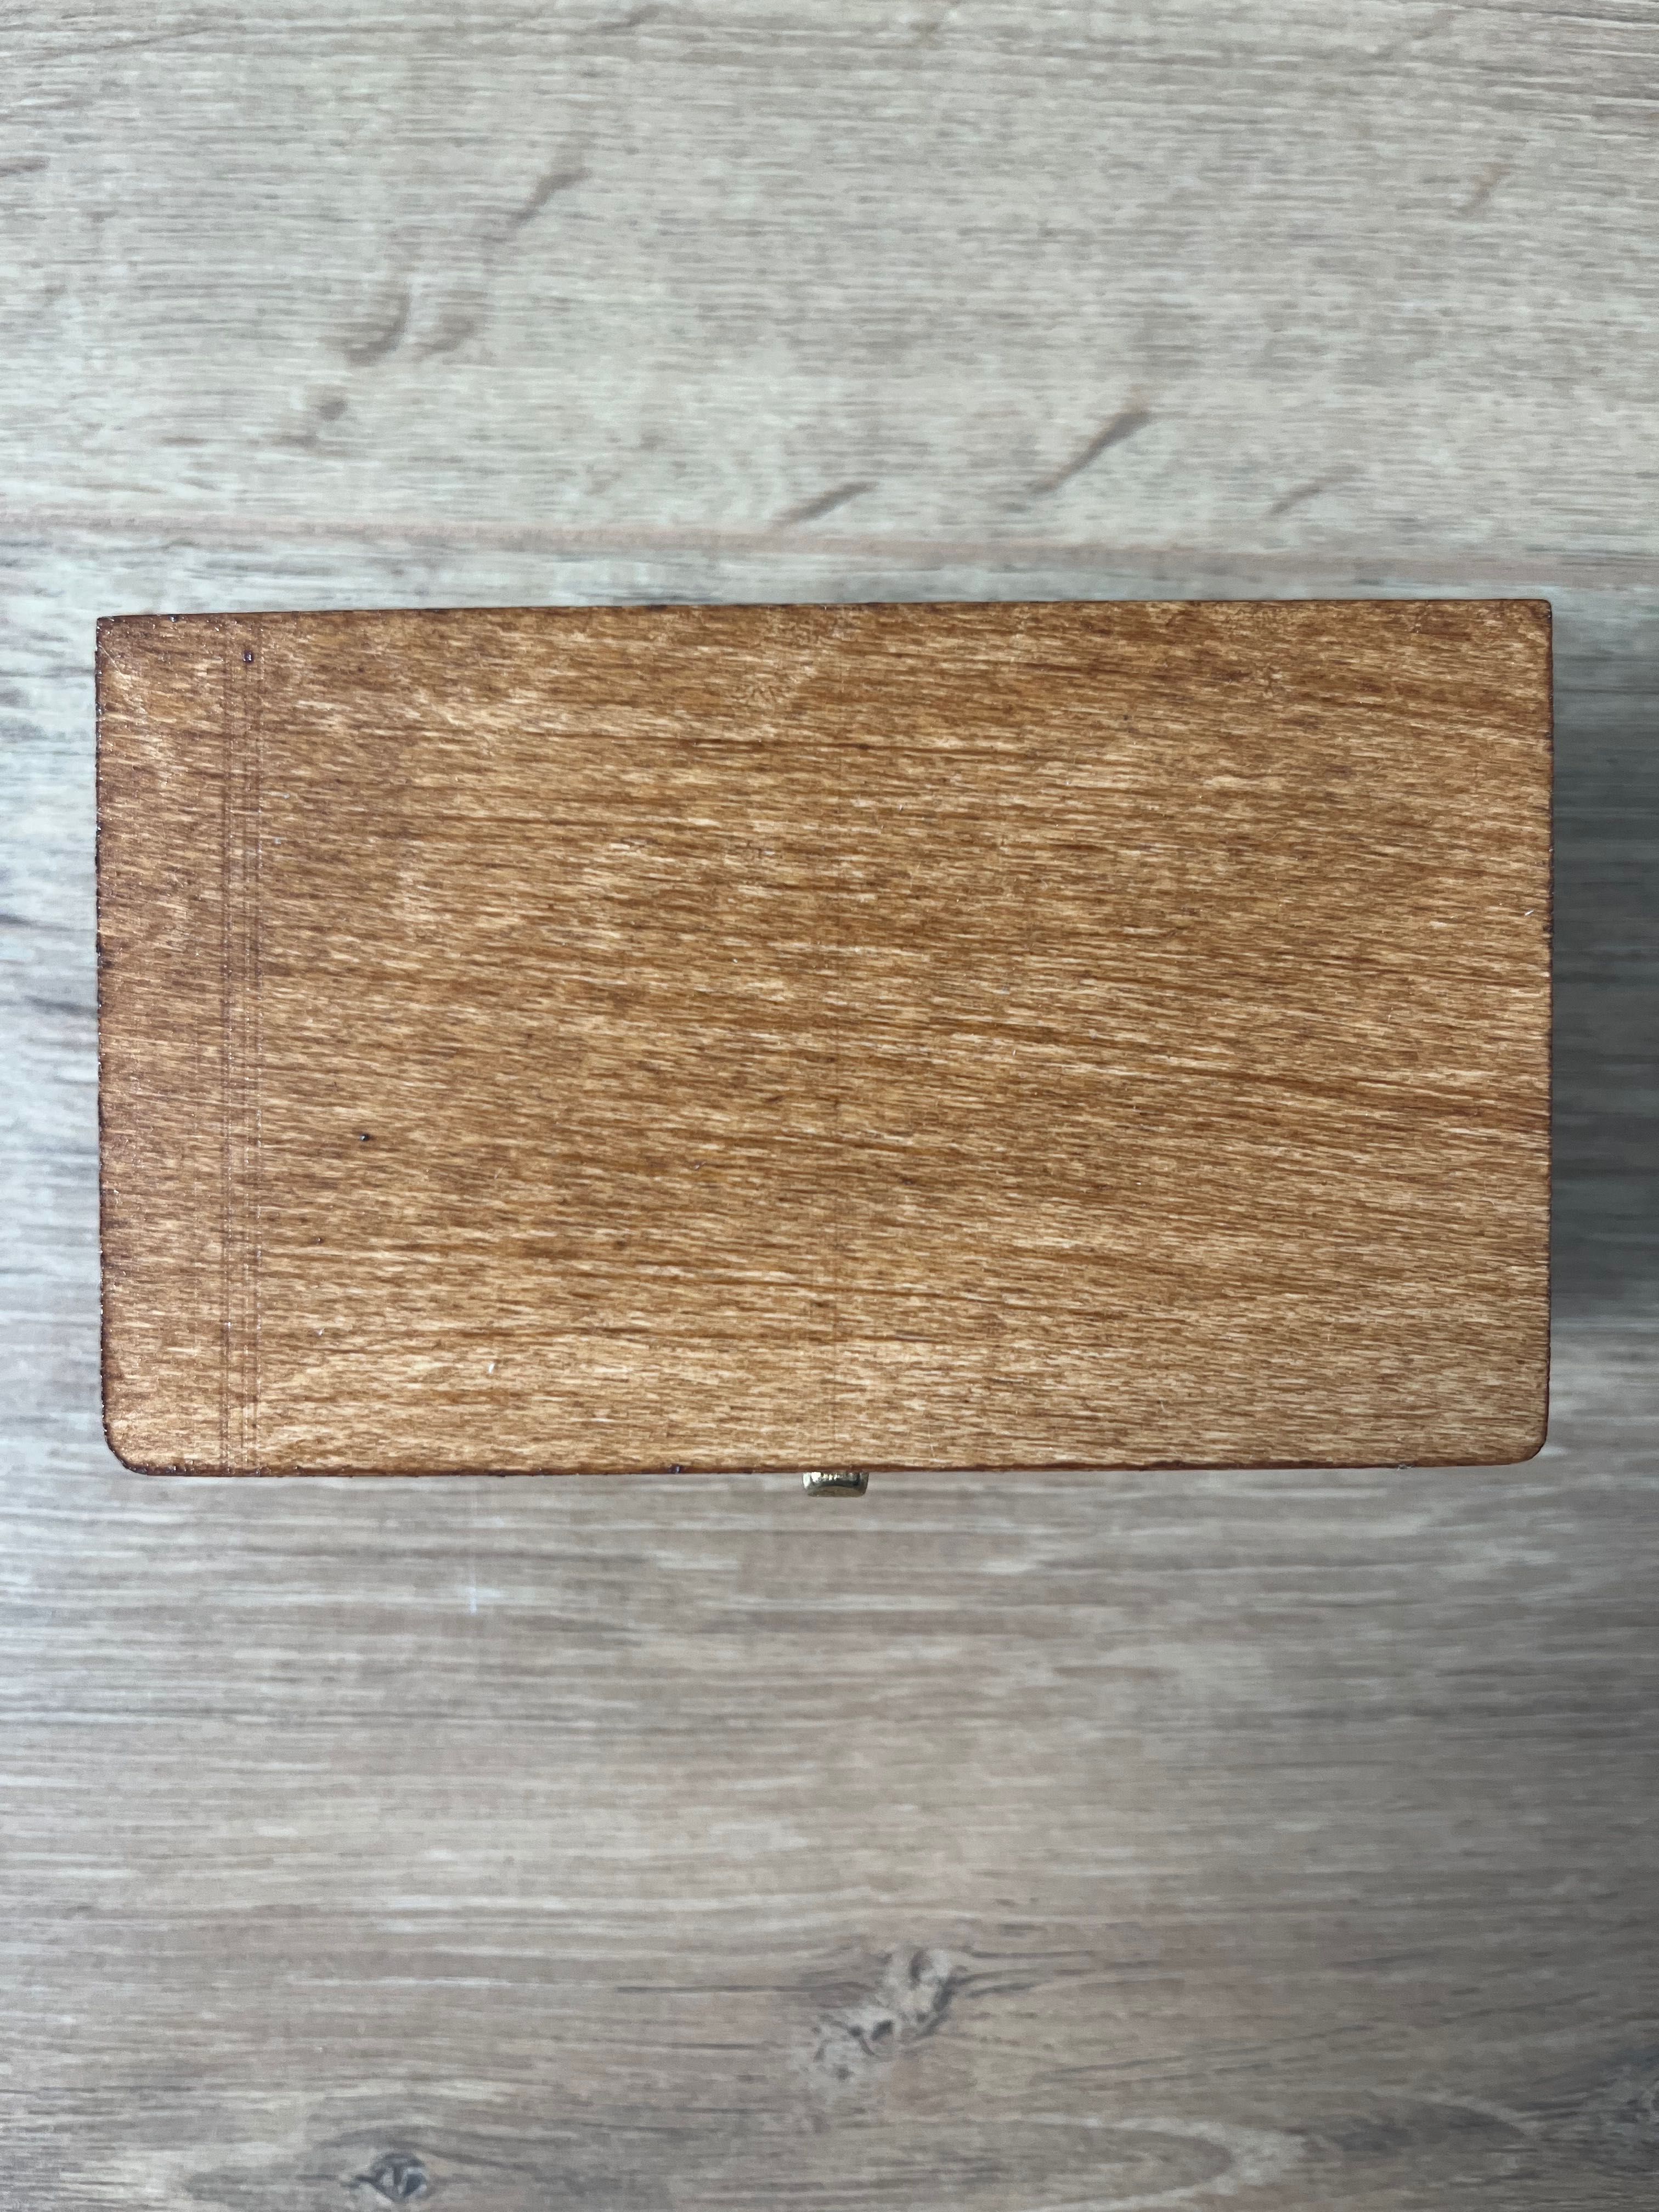 Drewniane pudełeczko na obrączki